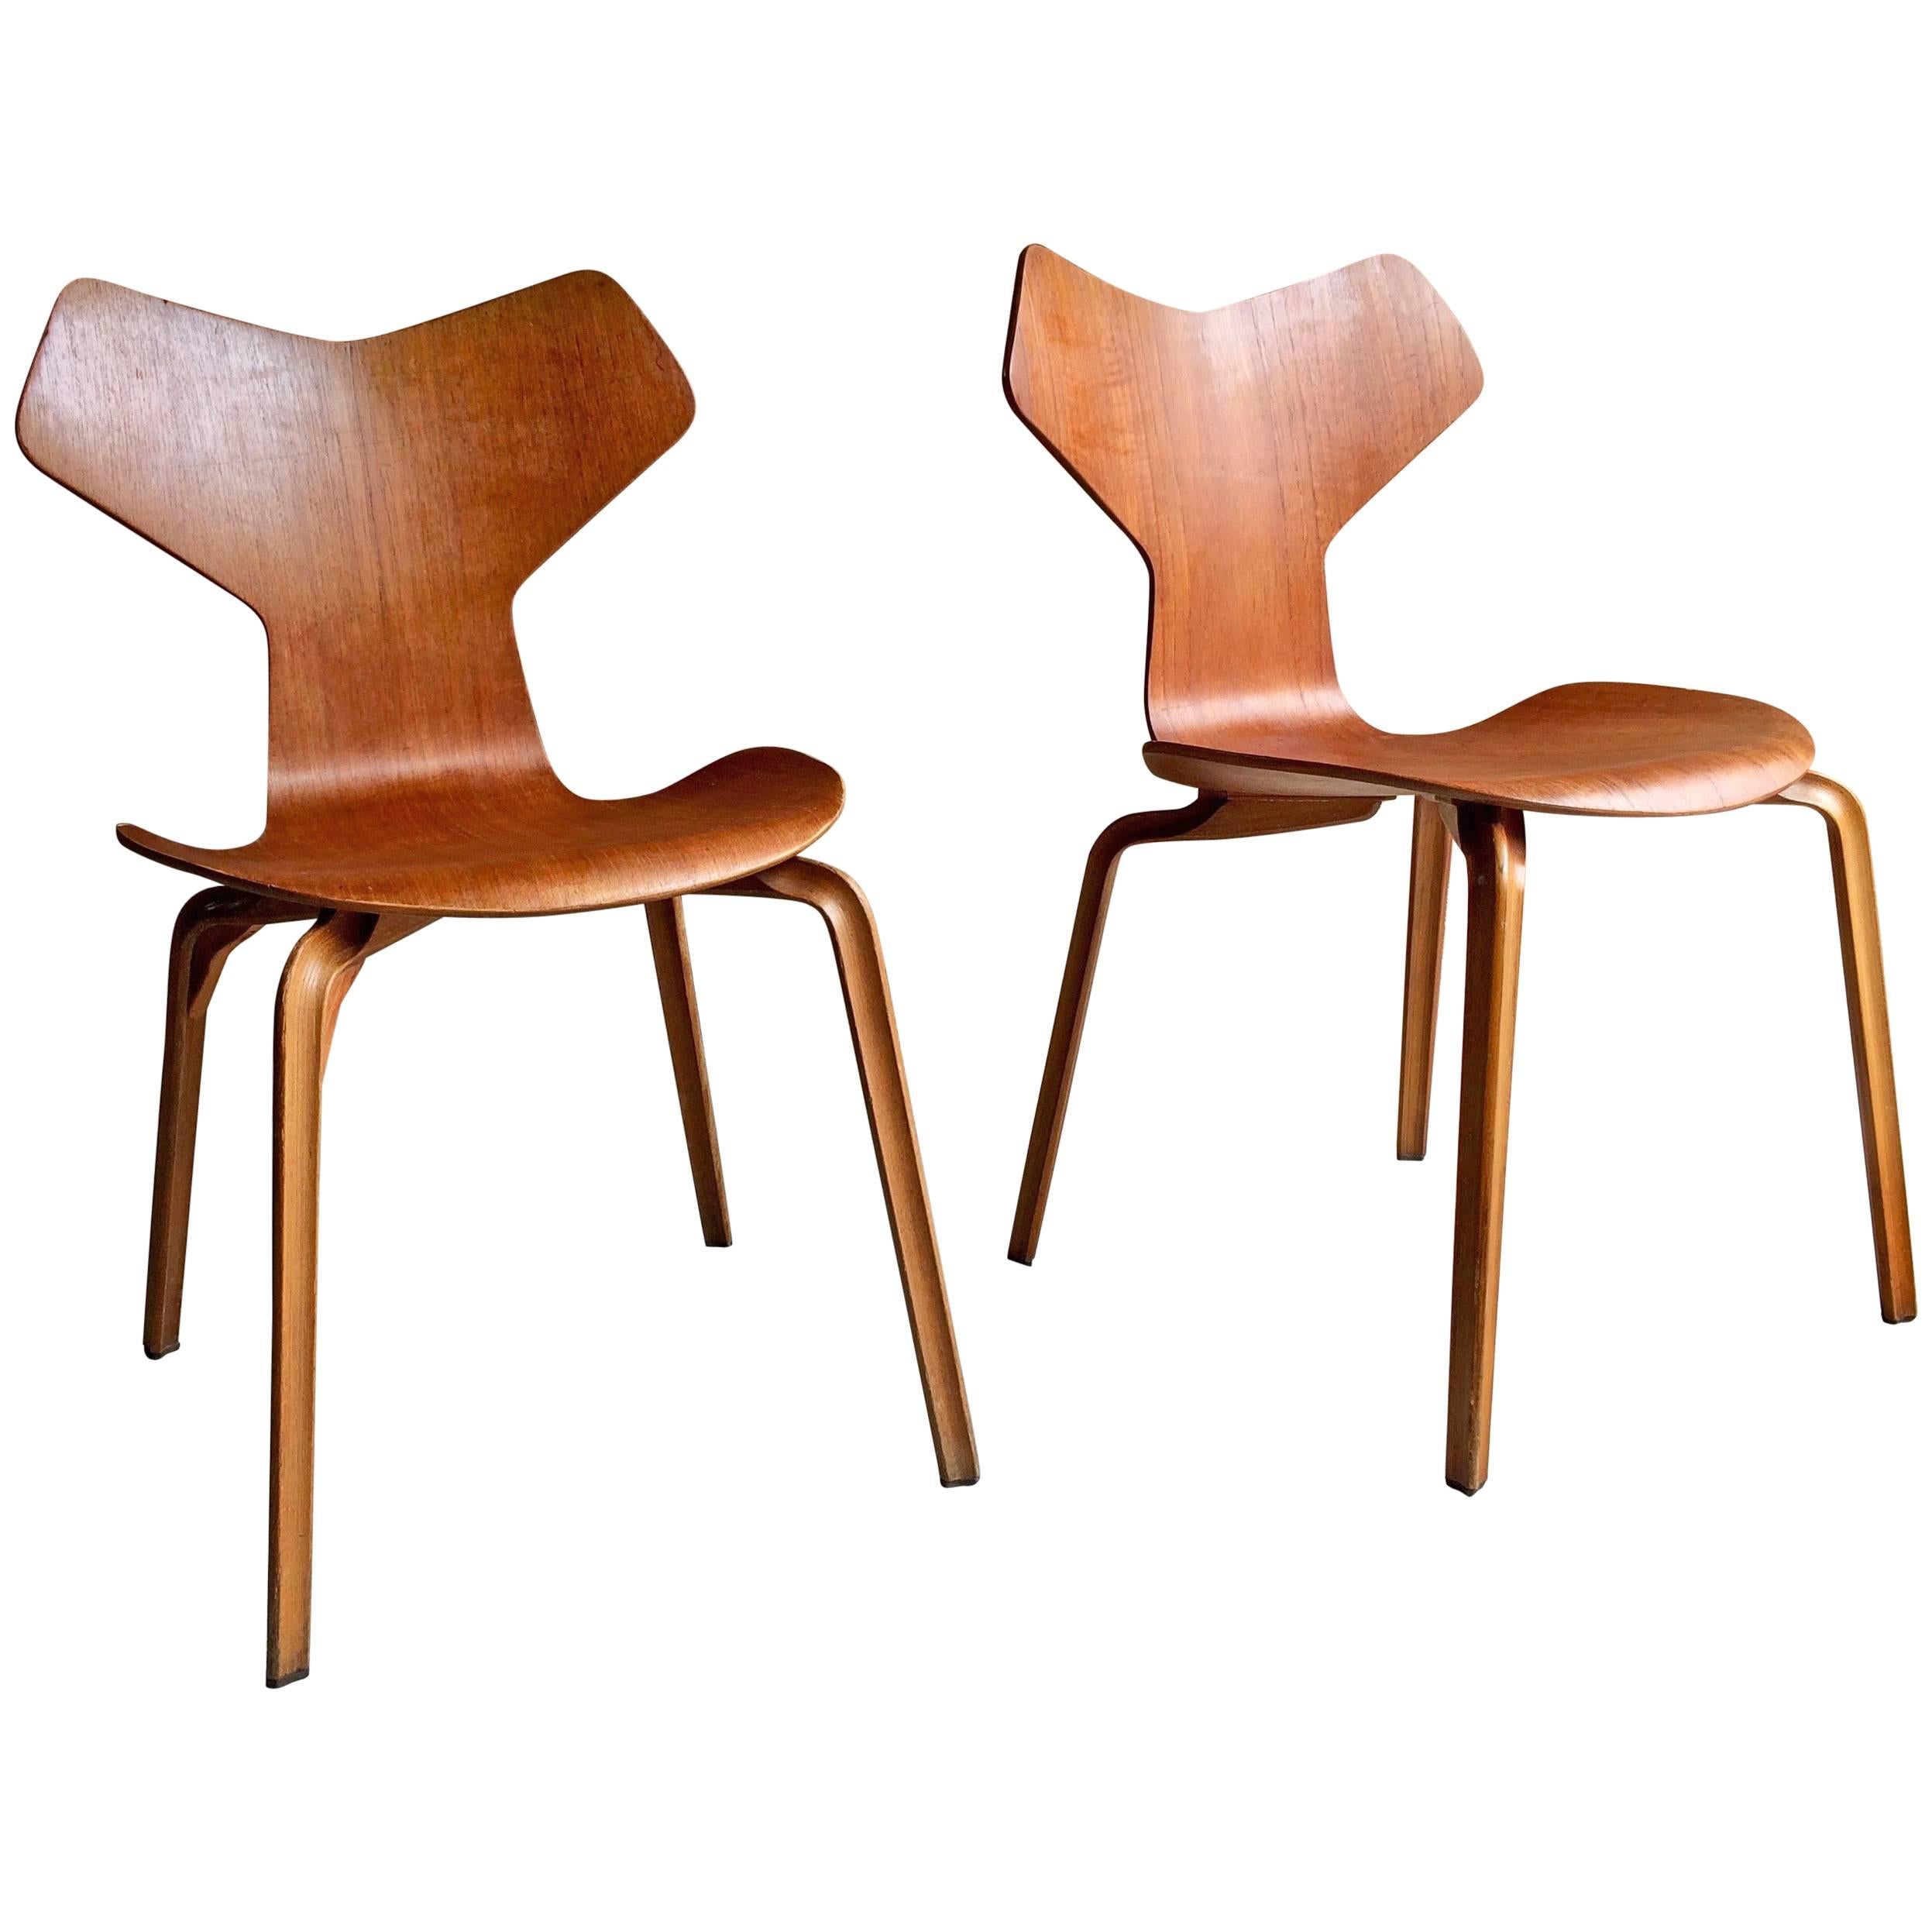 Arne Jacobsen Teak Grand Prix Chairs Pair Manufactured by Fritz Hansen, 1960s